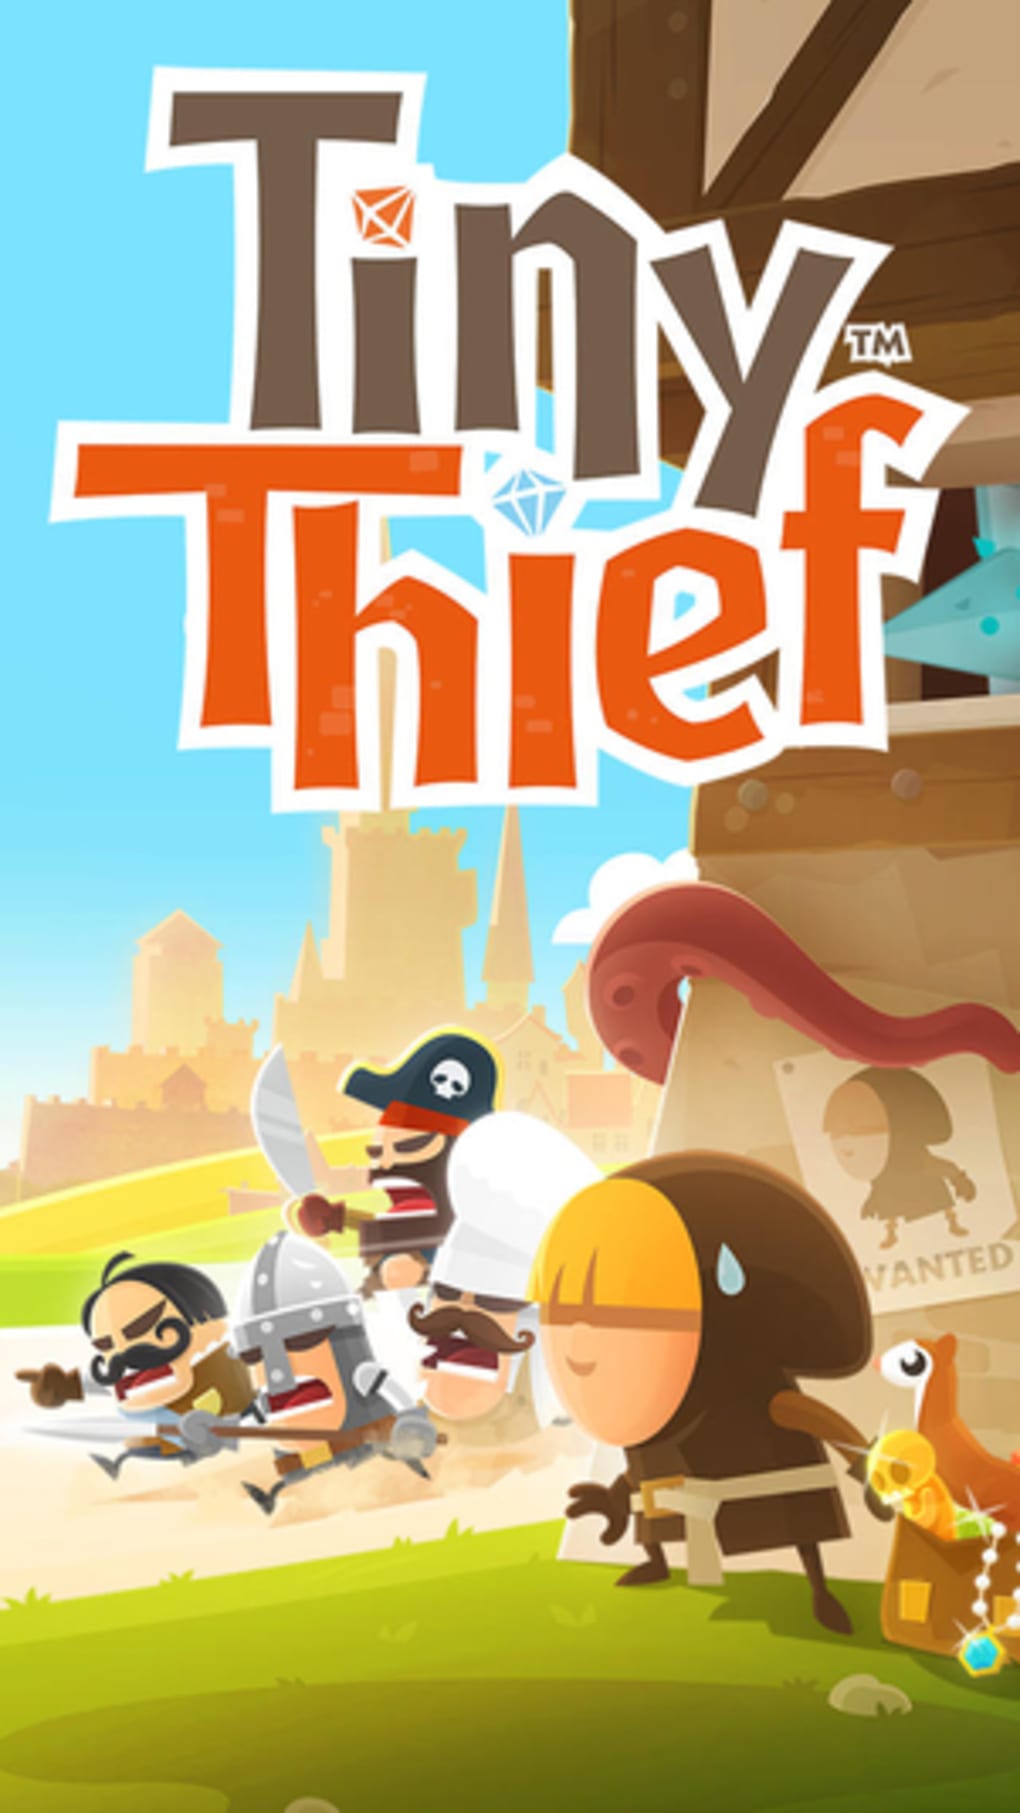 the tiny thief